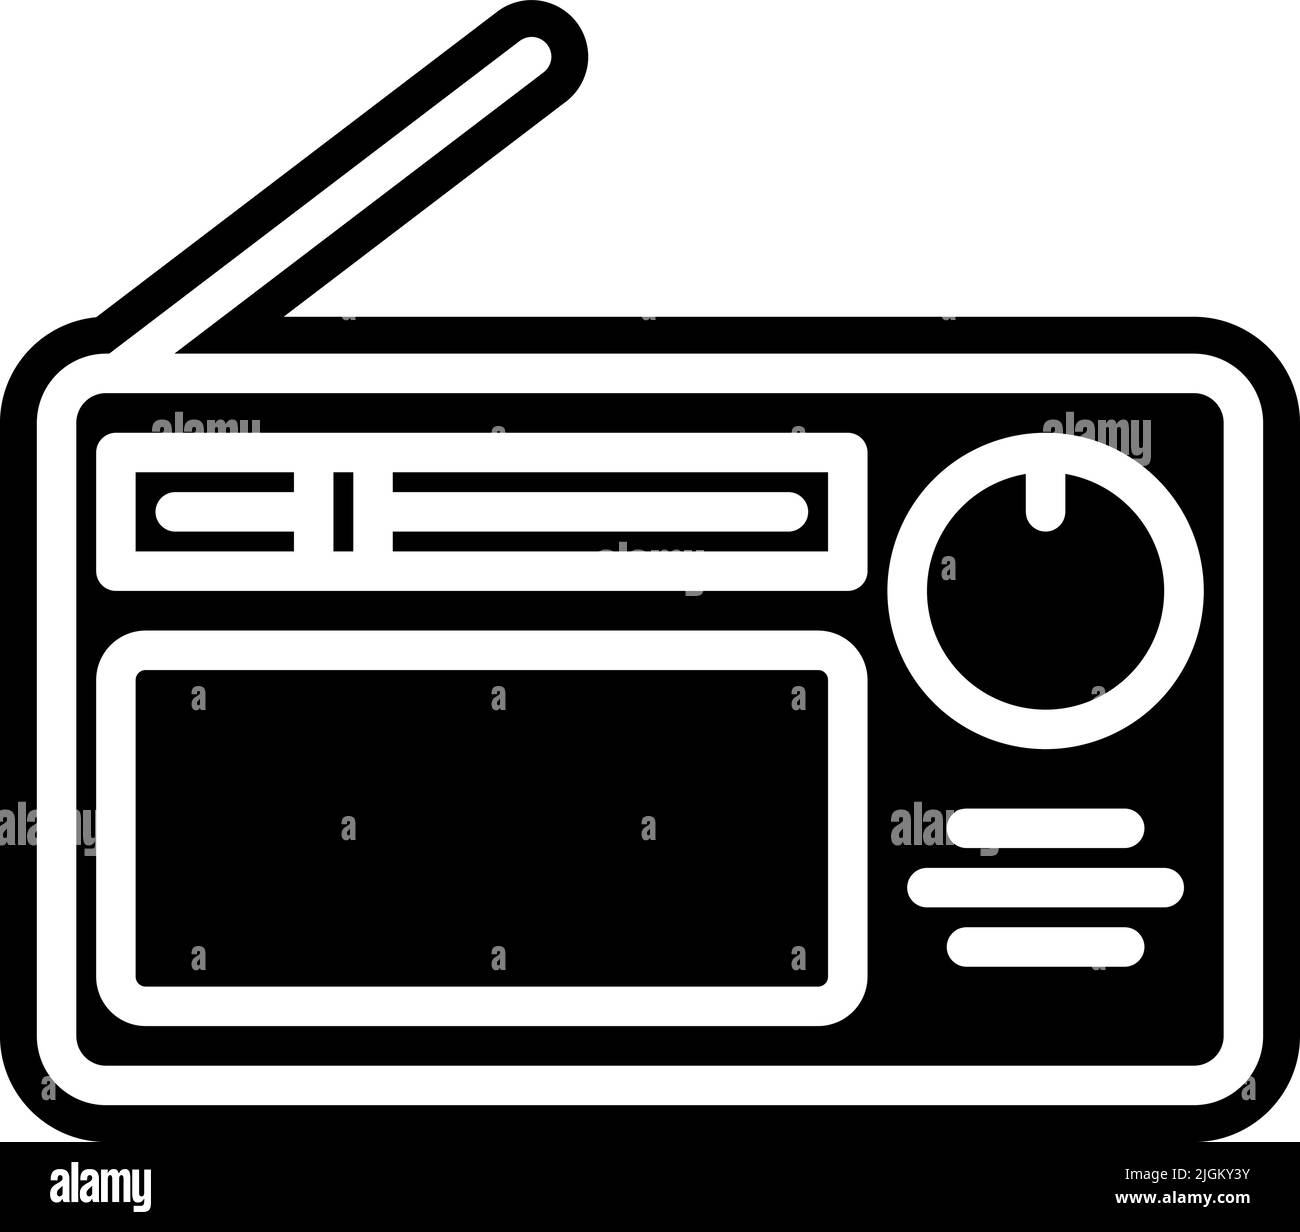 Radio icon Banque d'images noir et blanc - Alamy